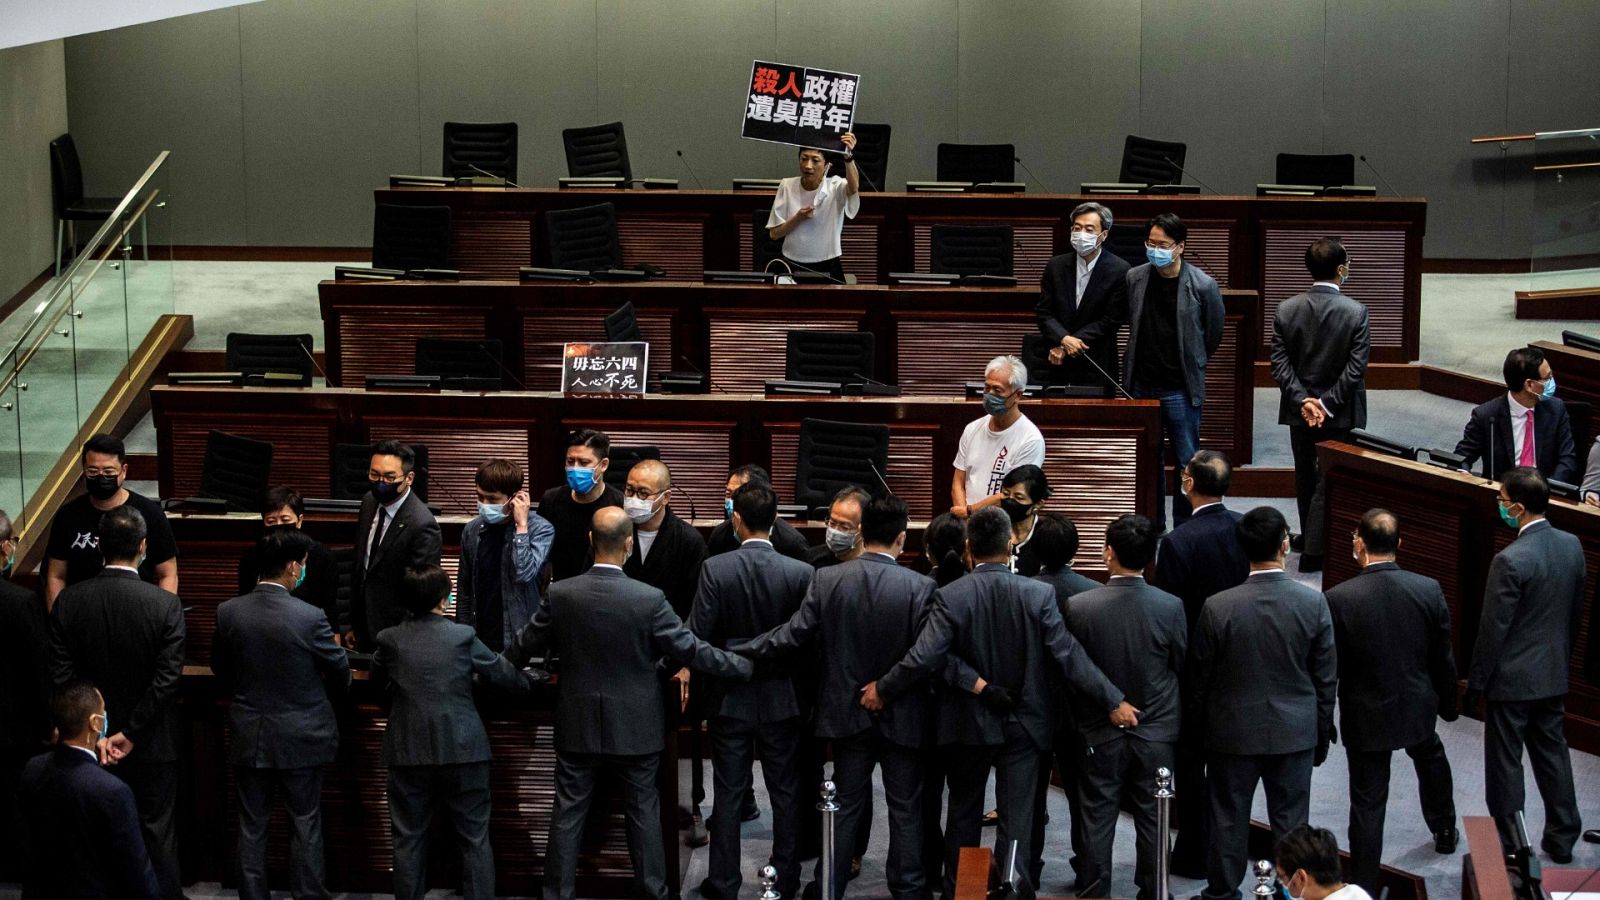  El Legislativo de Hong Kong aprueba la polémica ley del himno nacional chino